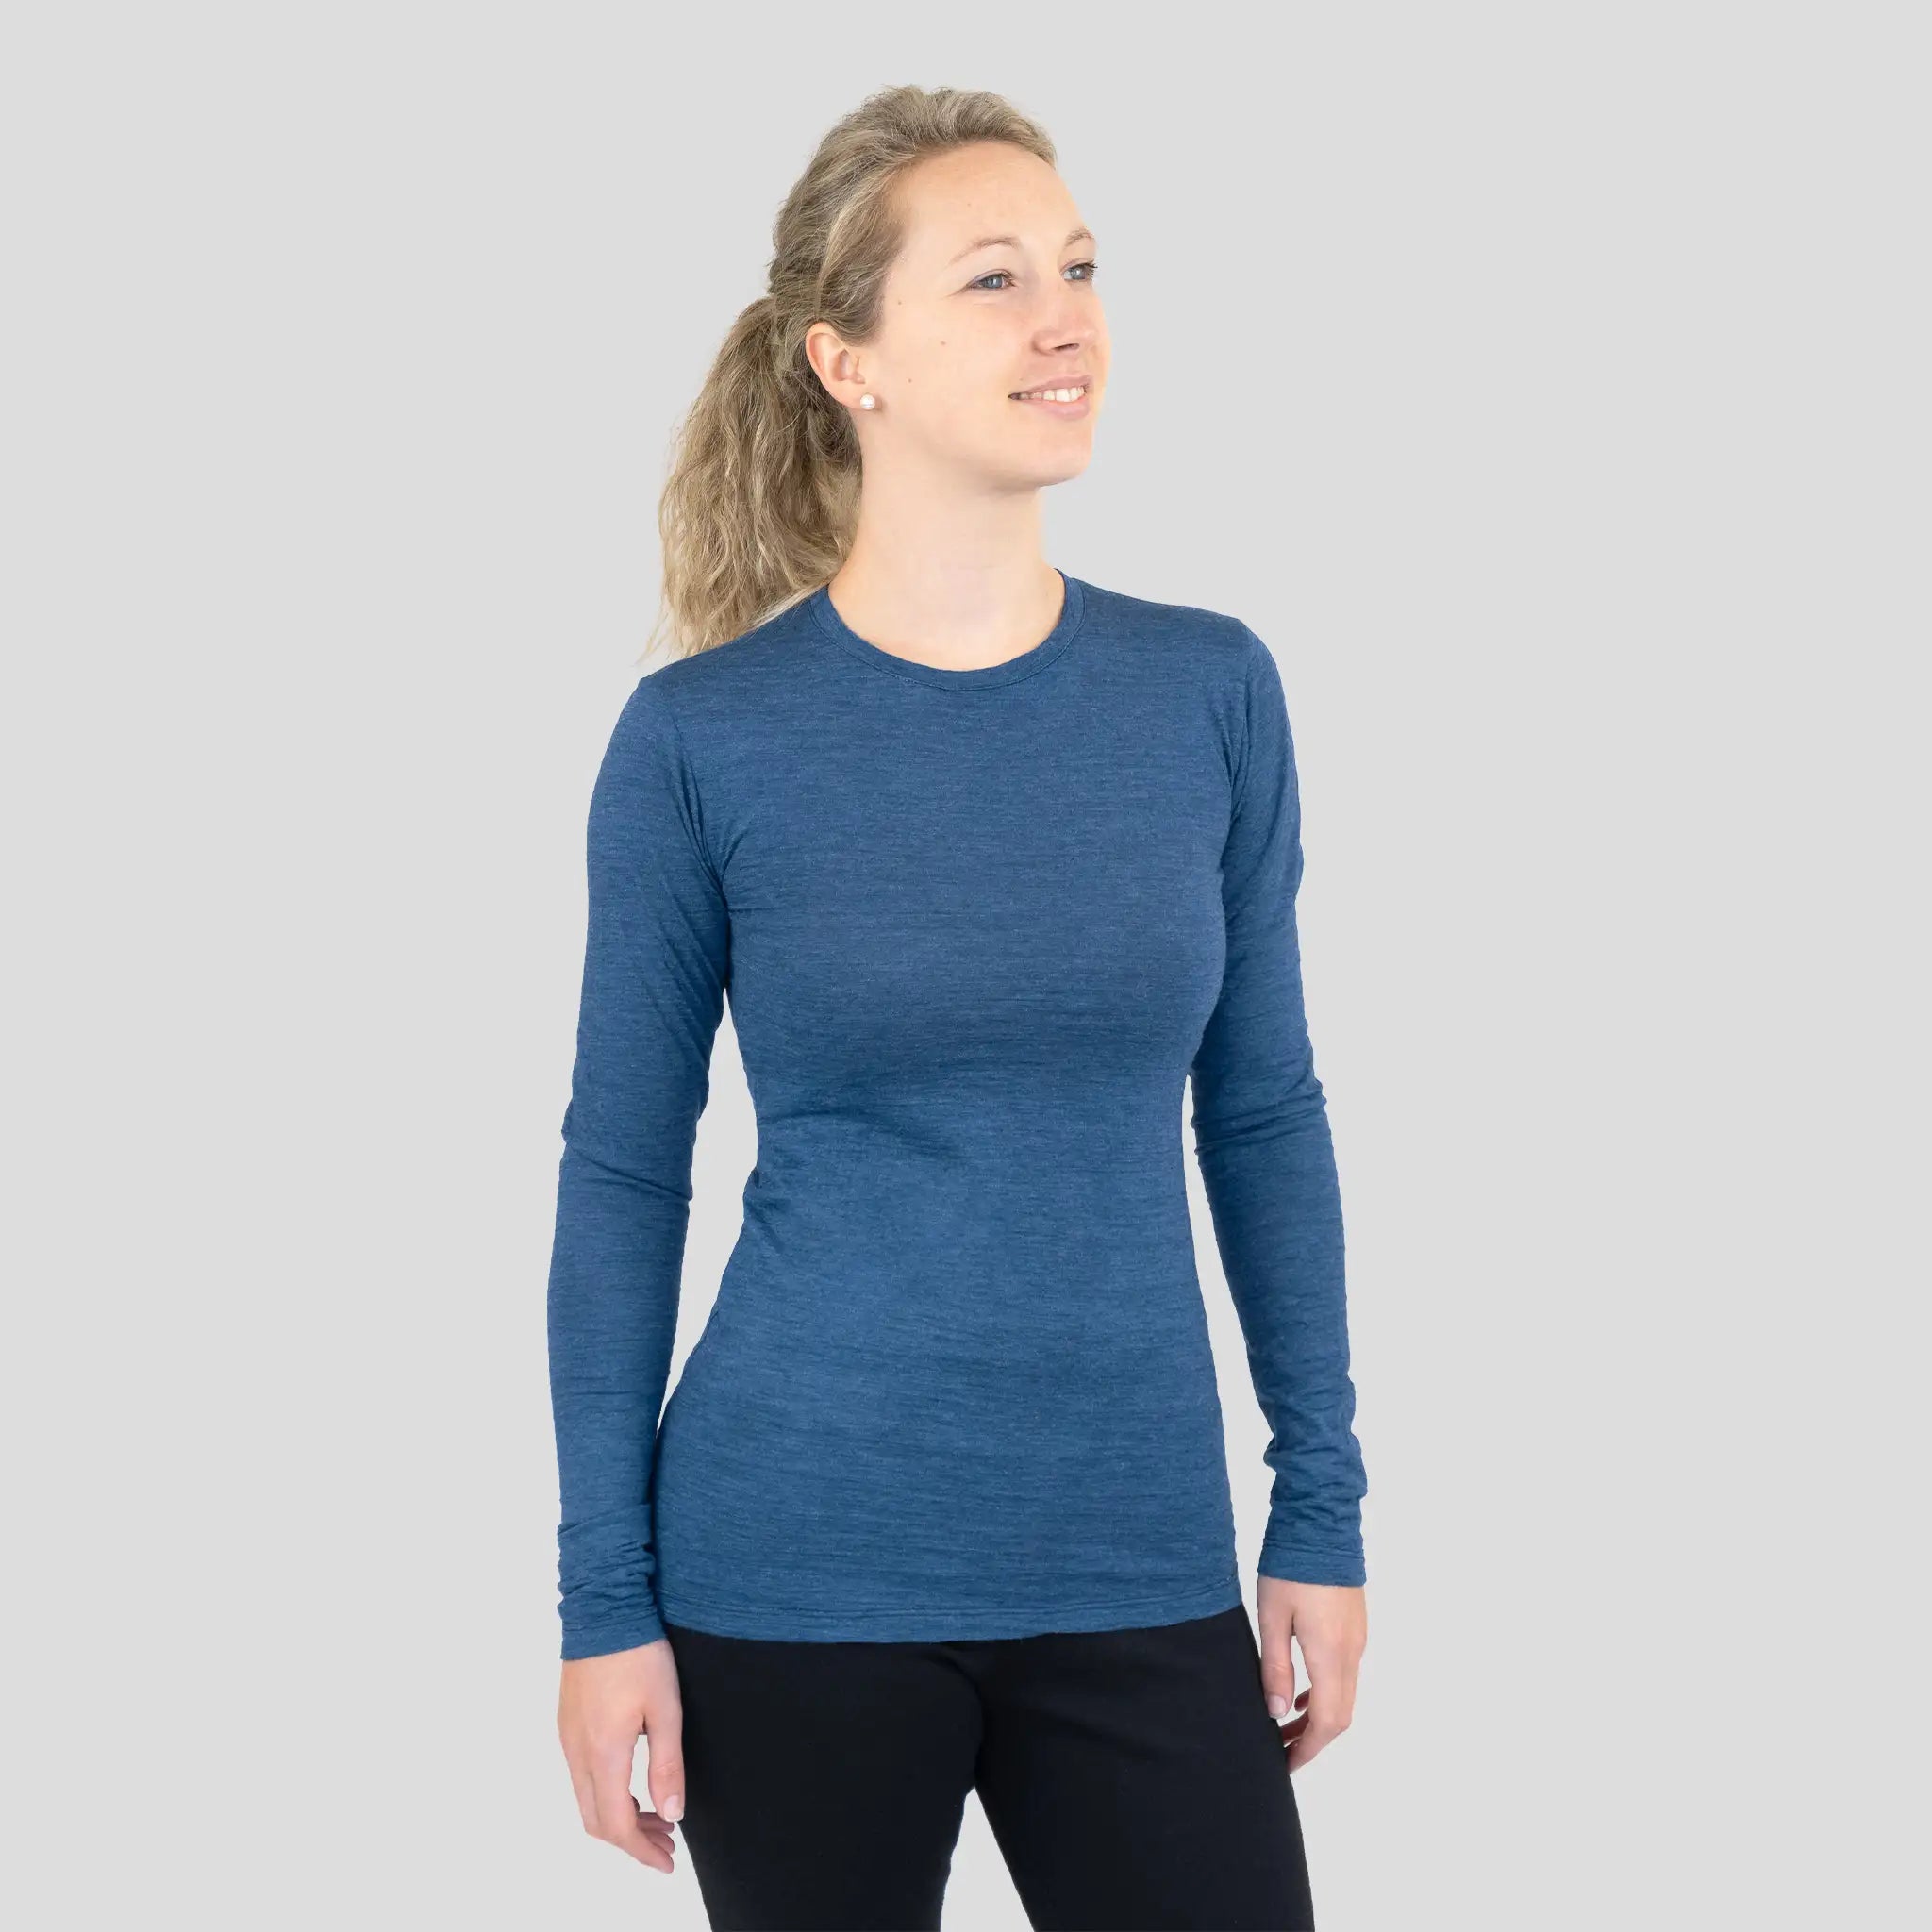 Women's Alpaca Wool Long Sleeve Shirt: 160 Ultralight color Natural Blue